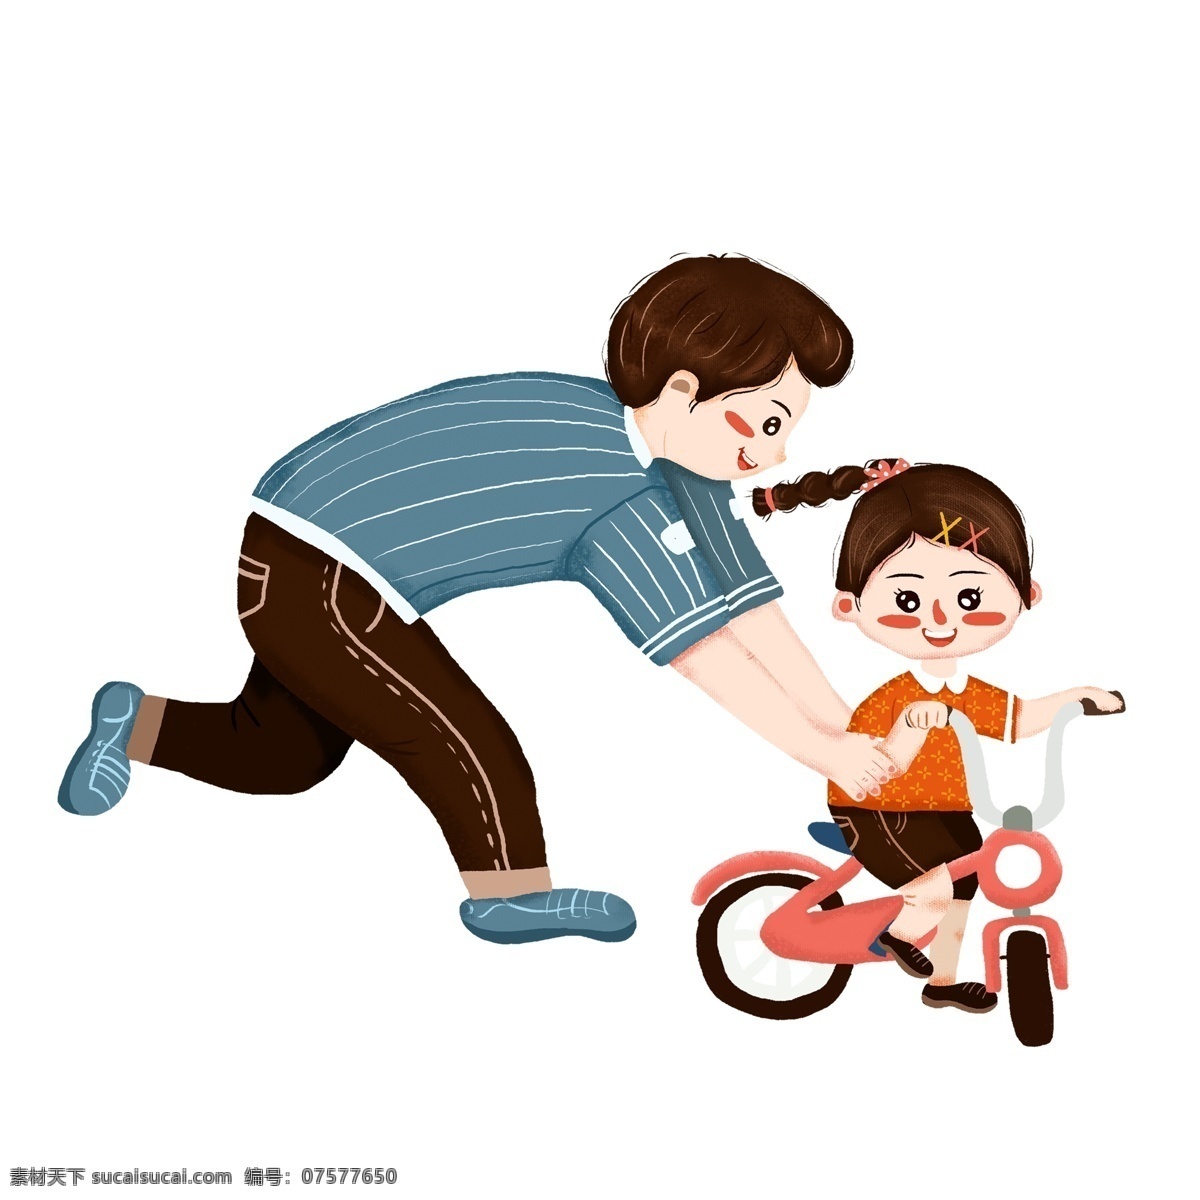 学 骑 自行车 父女 人物 元素 亲子图案 人物元素 卡通人物 父女人物 父亲节 手绘元素 psd元素